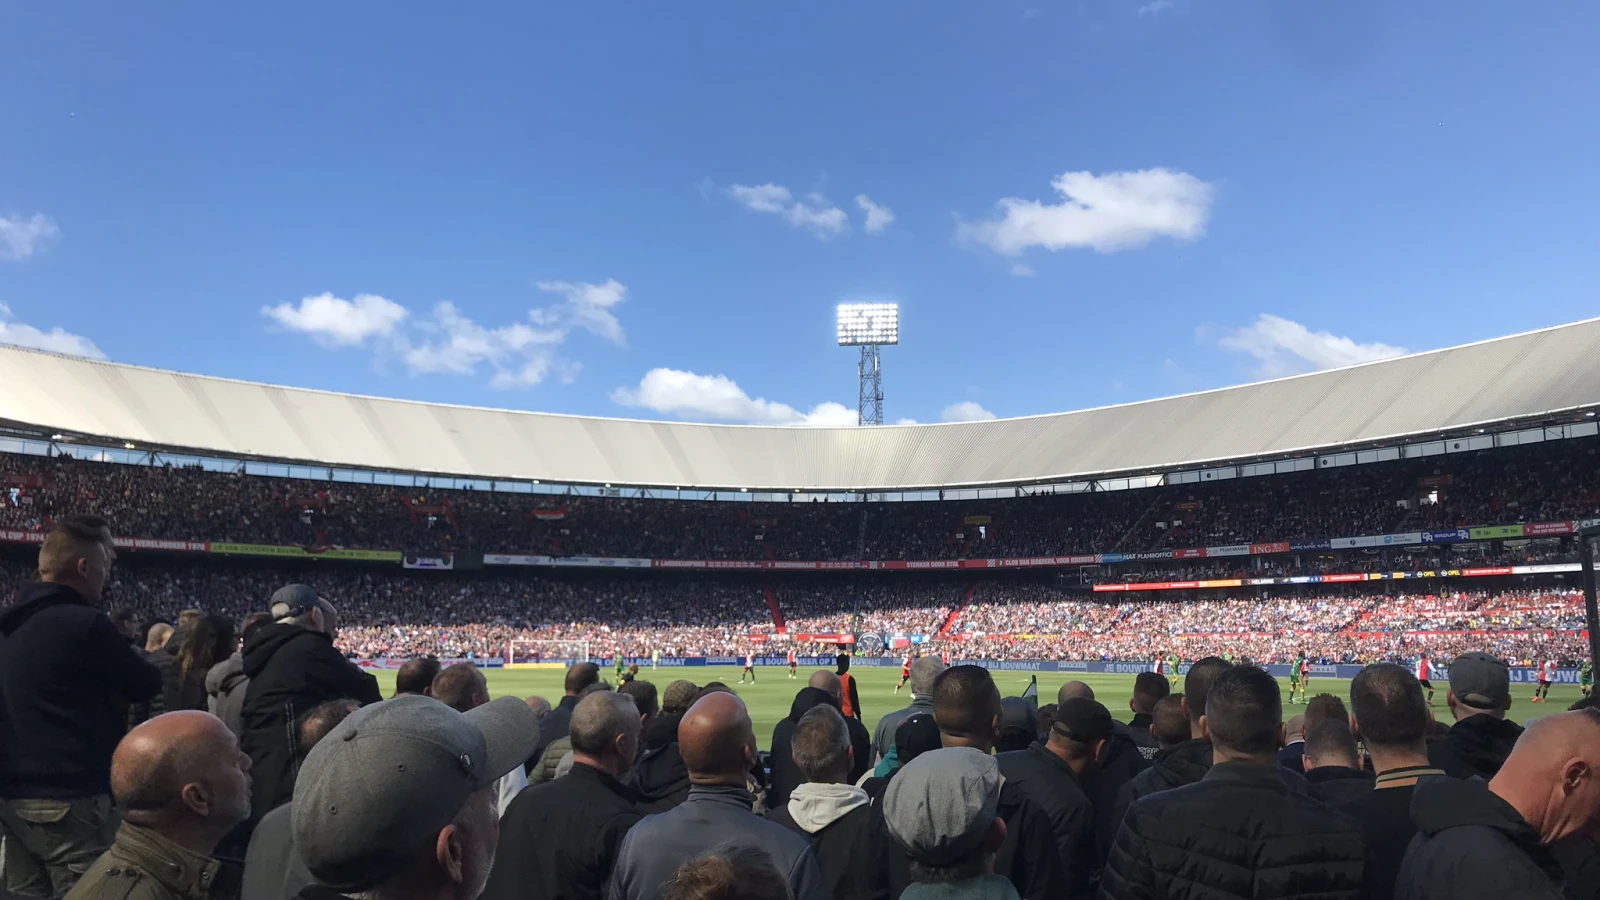 Feyenoord blij met supporters tijdens wedstrijd tegen Vitesse, nadere info volgt